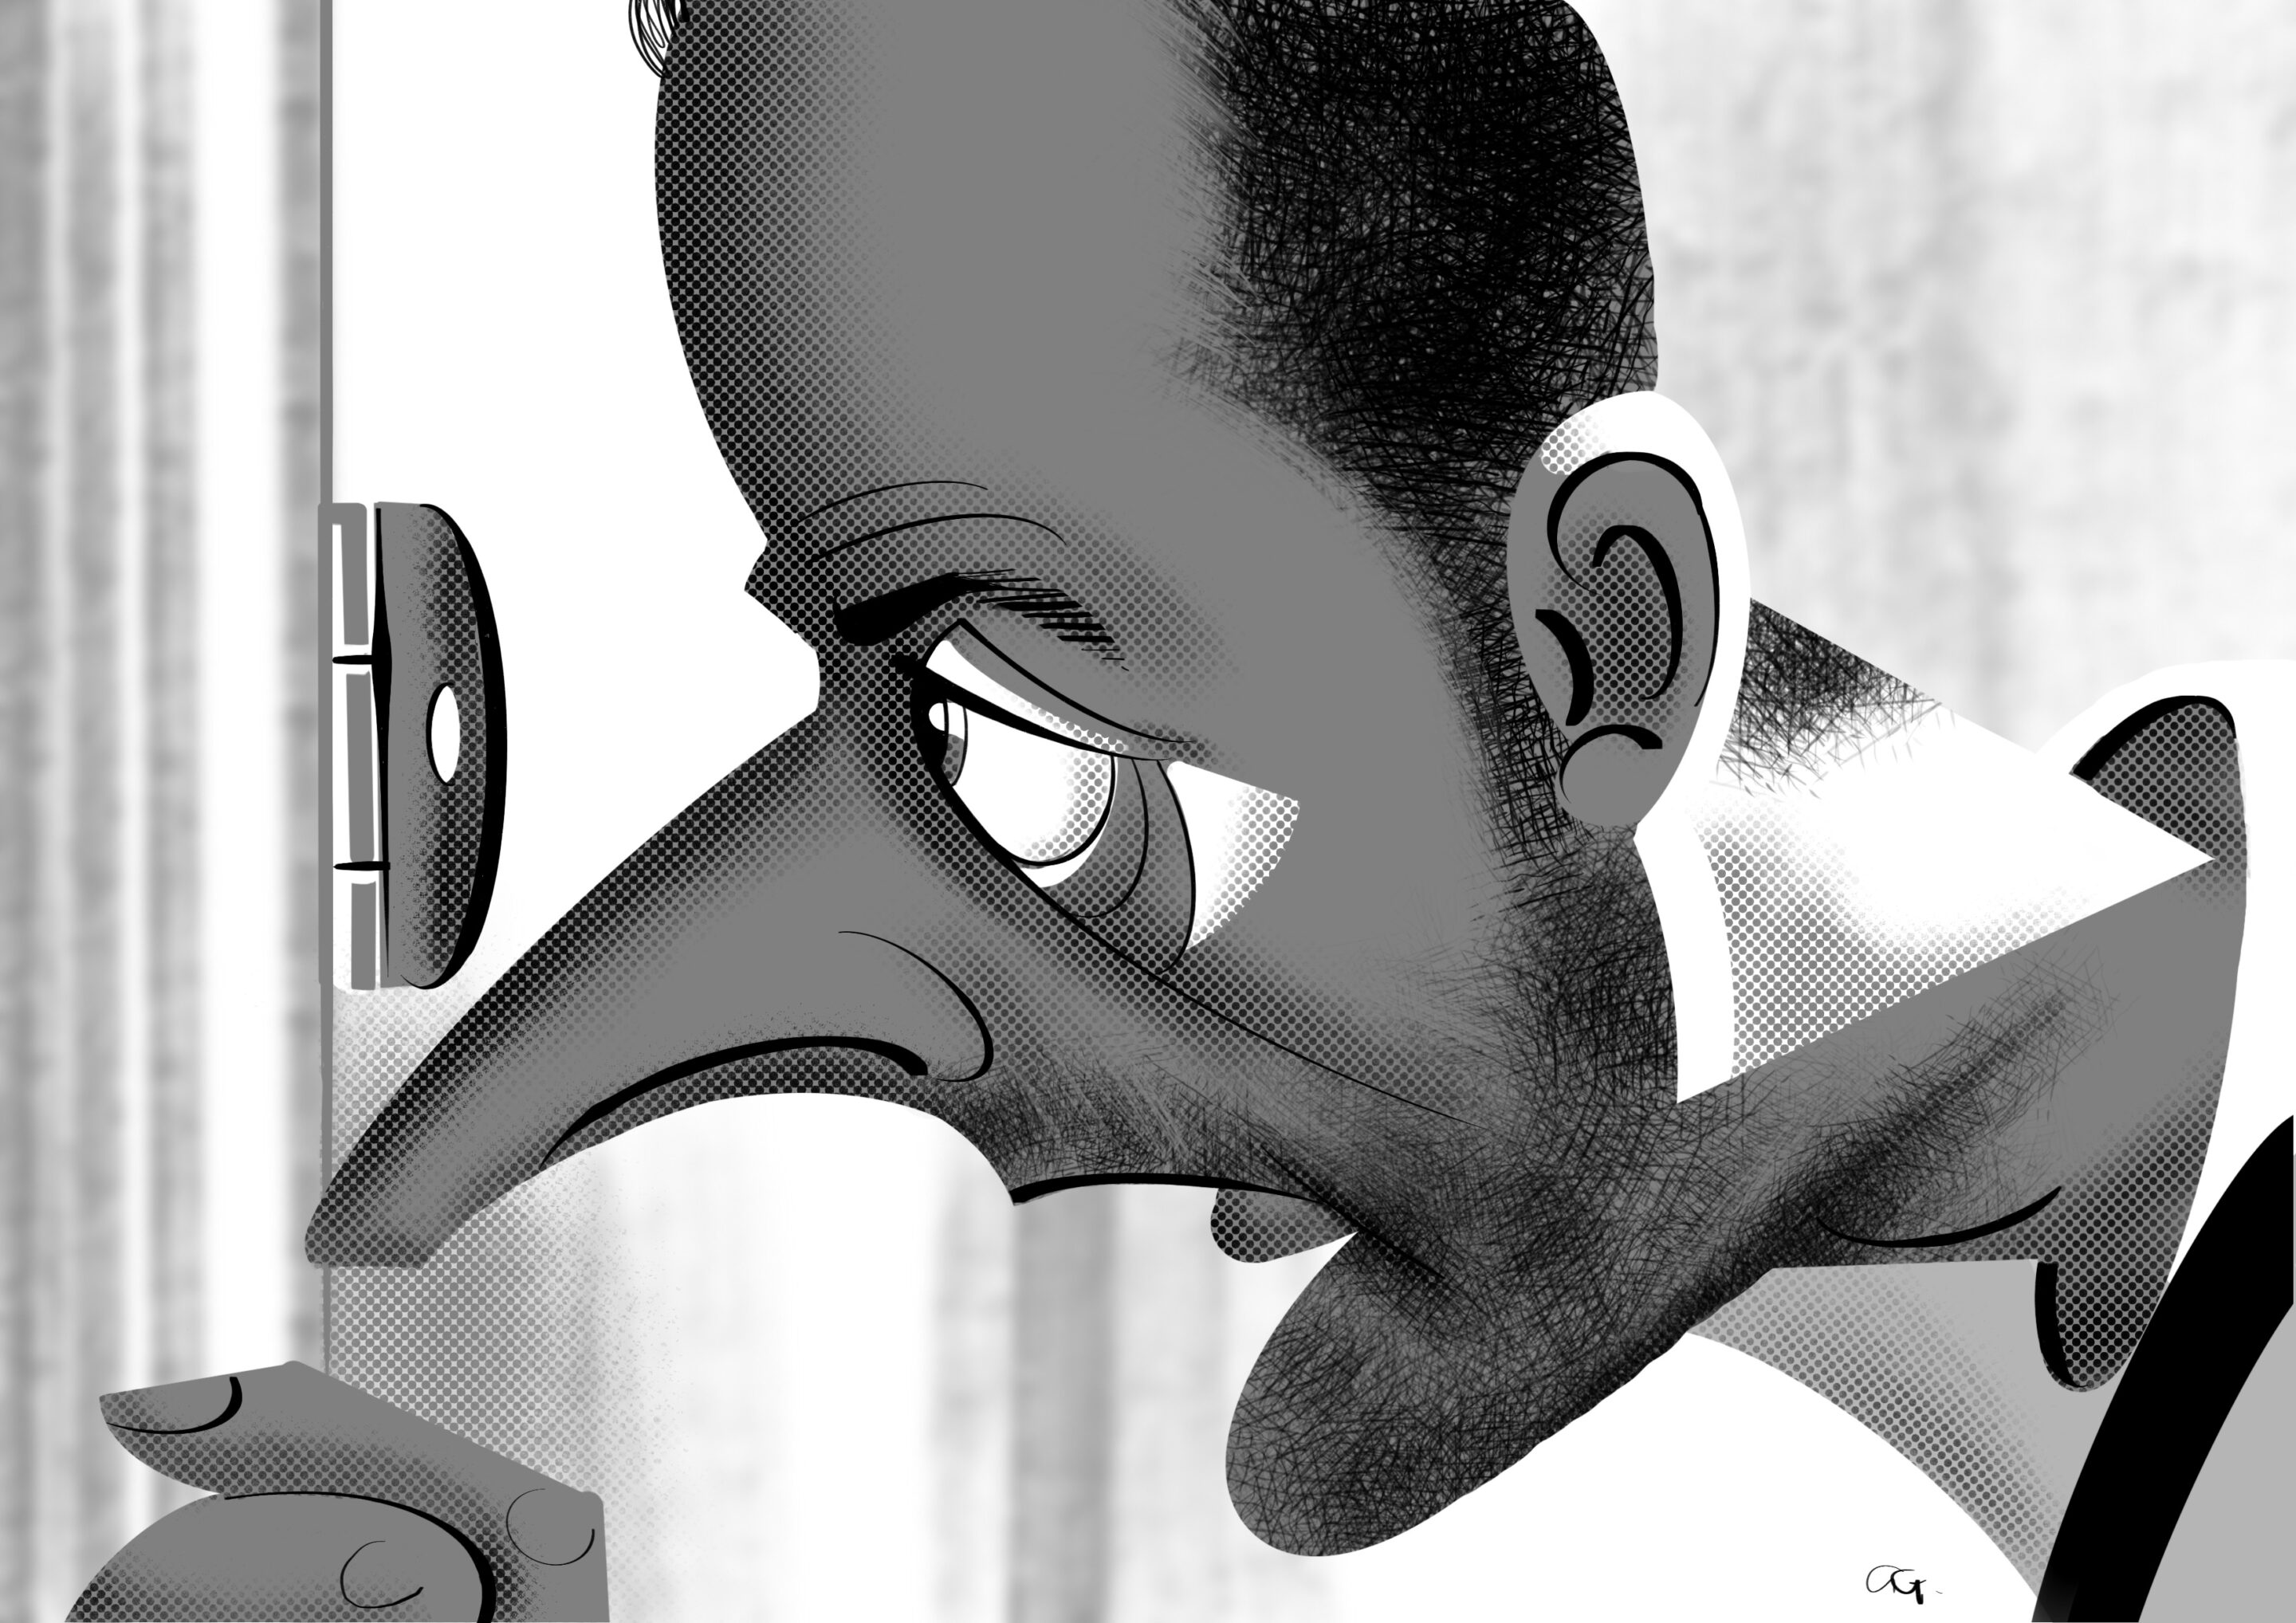 Jean Reno caricature